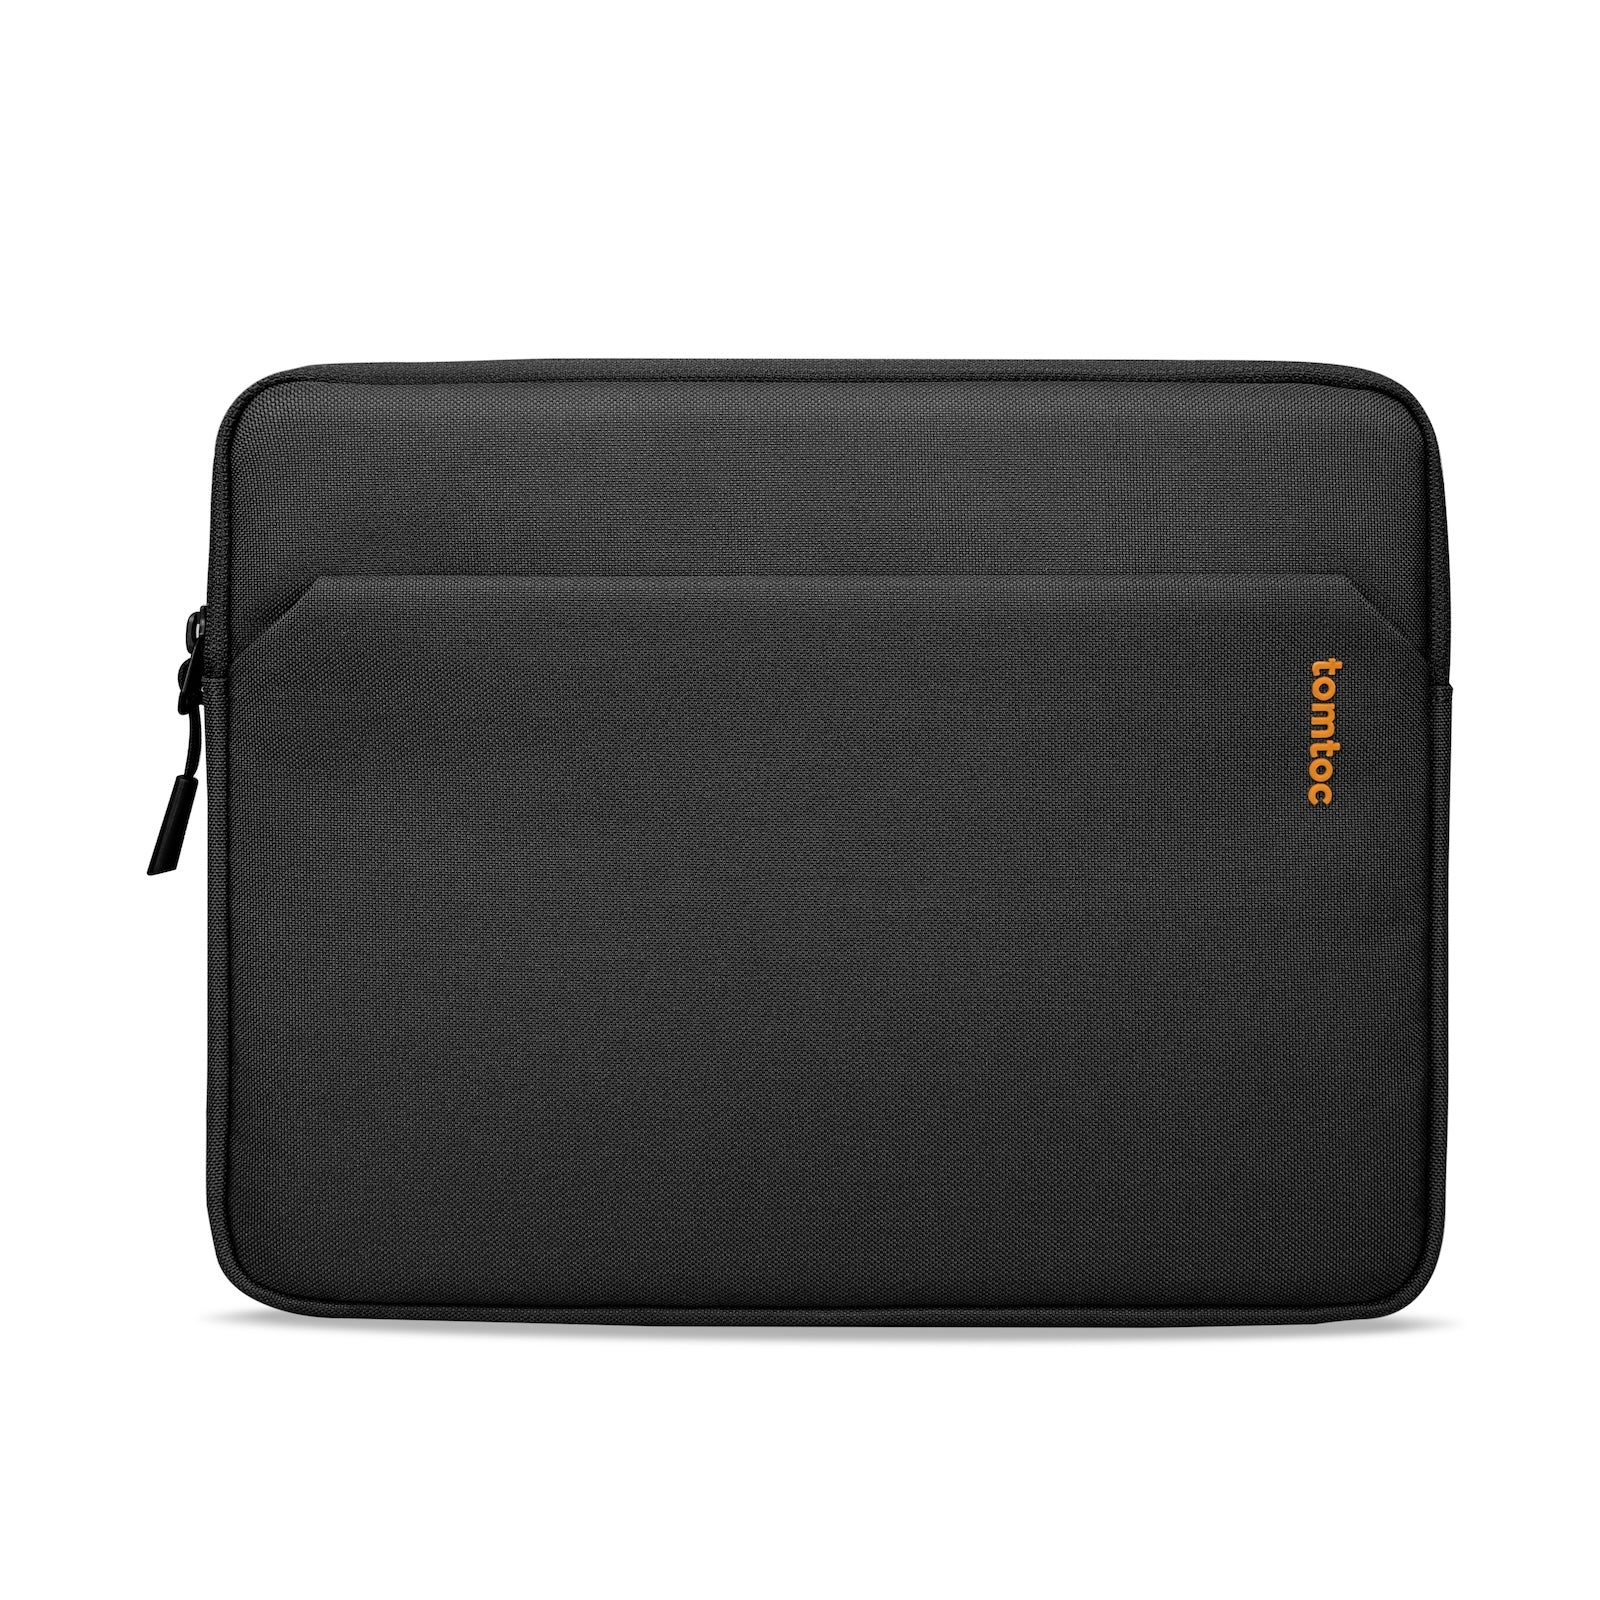 Tomtoc B18 - 12.9 inç Siyah iPad/Tablet PC Kılıfı